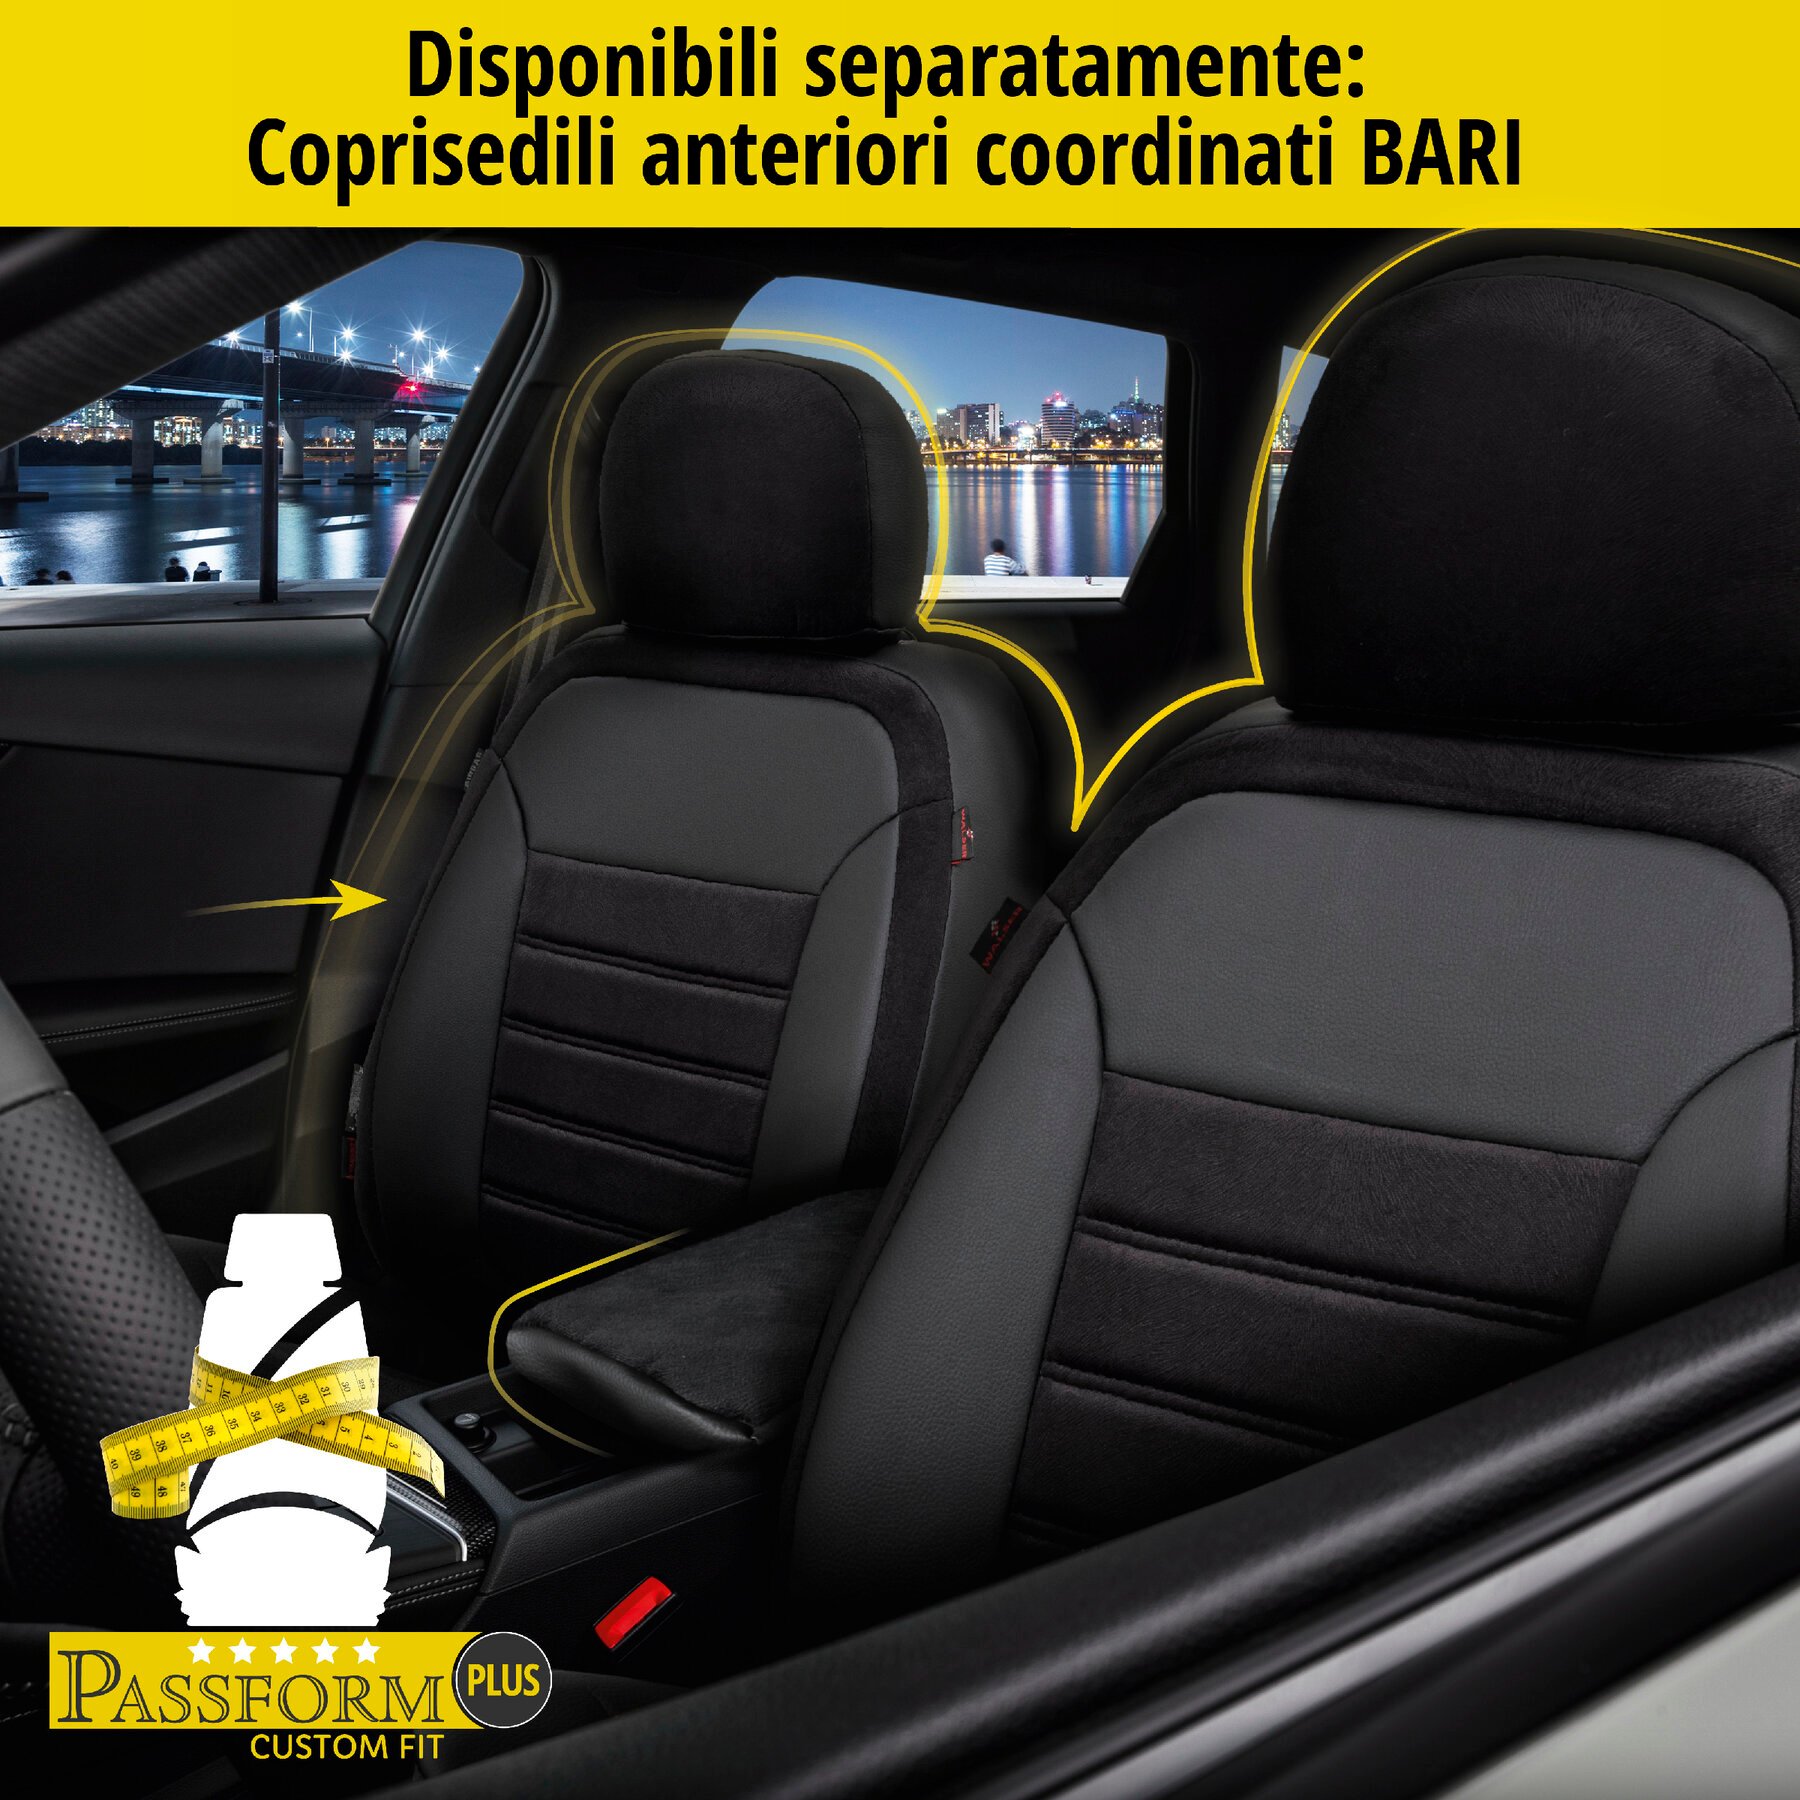 Coprisedili Bari per Dacia Duster 10/2017-Oggi, 1 coprisedili per sedili normali